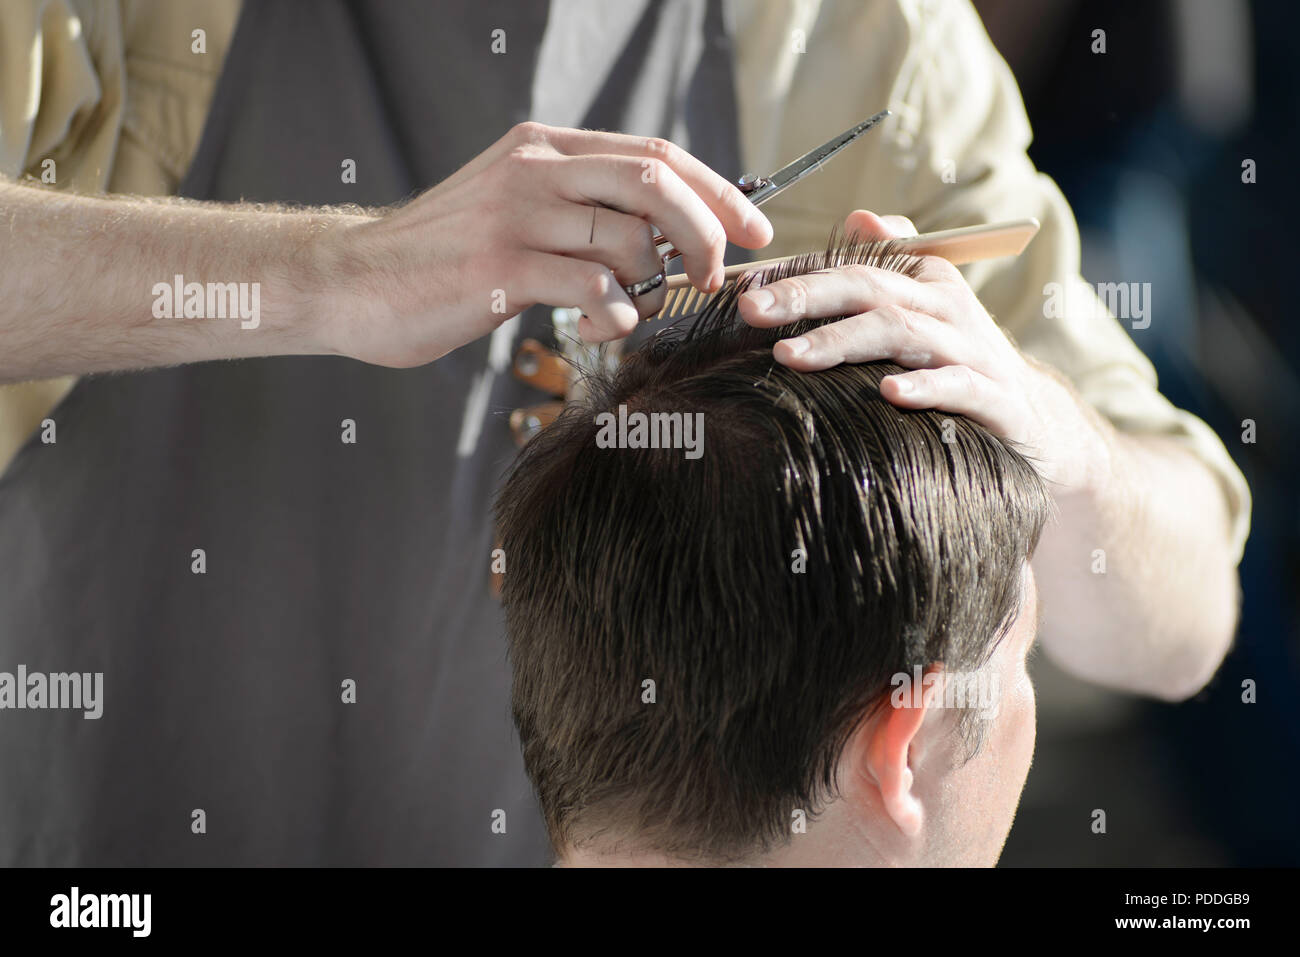 Mann Haarschnitt Friseur Friseur Haare Schneiden Von Kunden Im Salon Stockfotografie Alamy